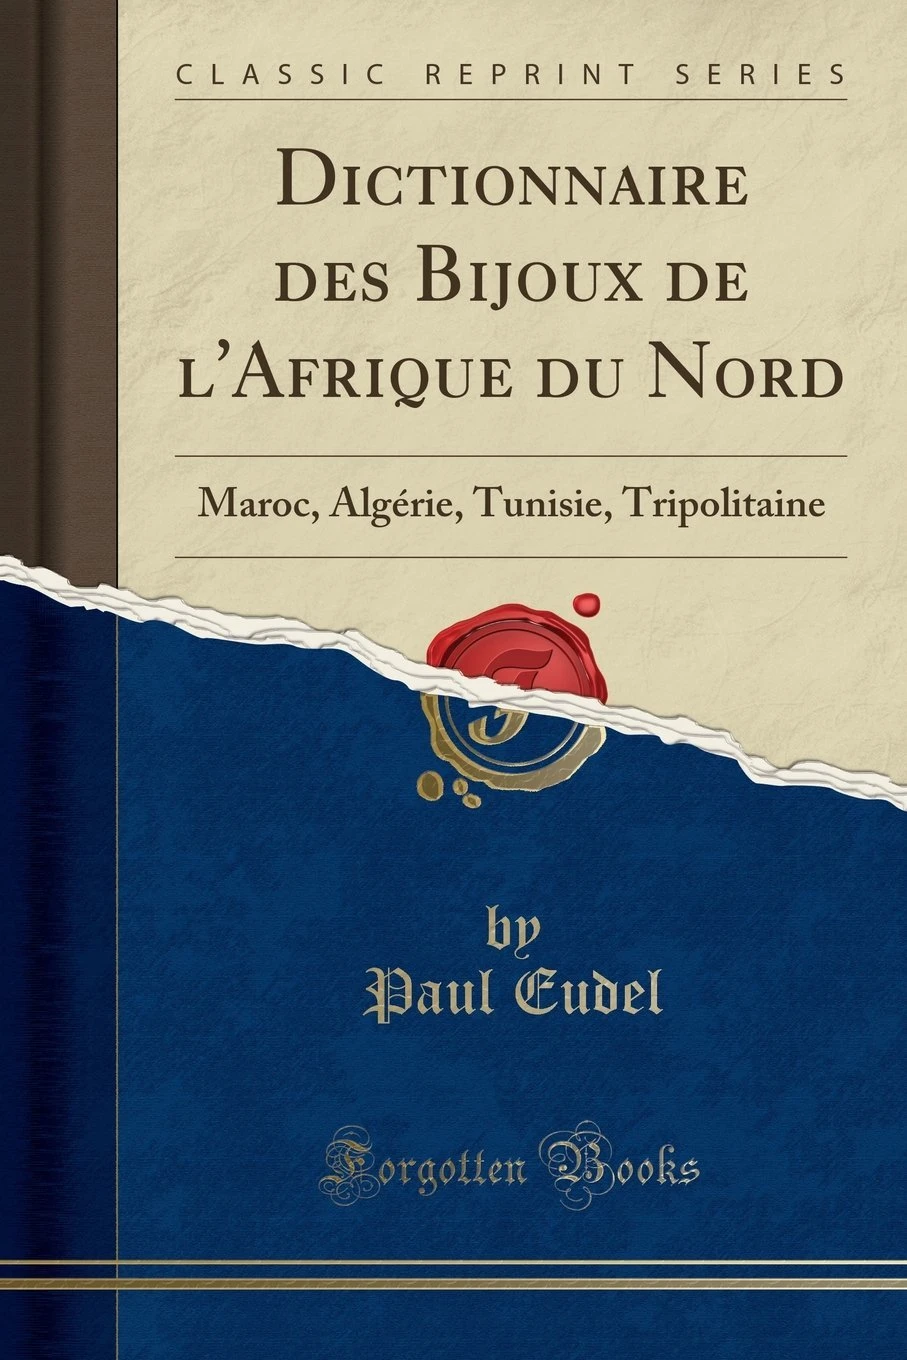 Dictionnaire des bijoux de lAfrique du Nord Maroc Algerie Tunisie Tripolitaine Ed 1906